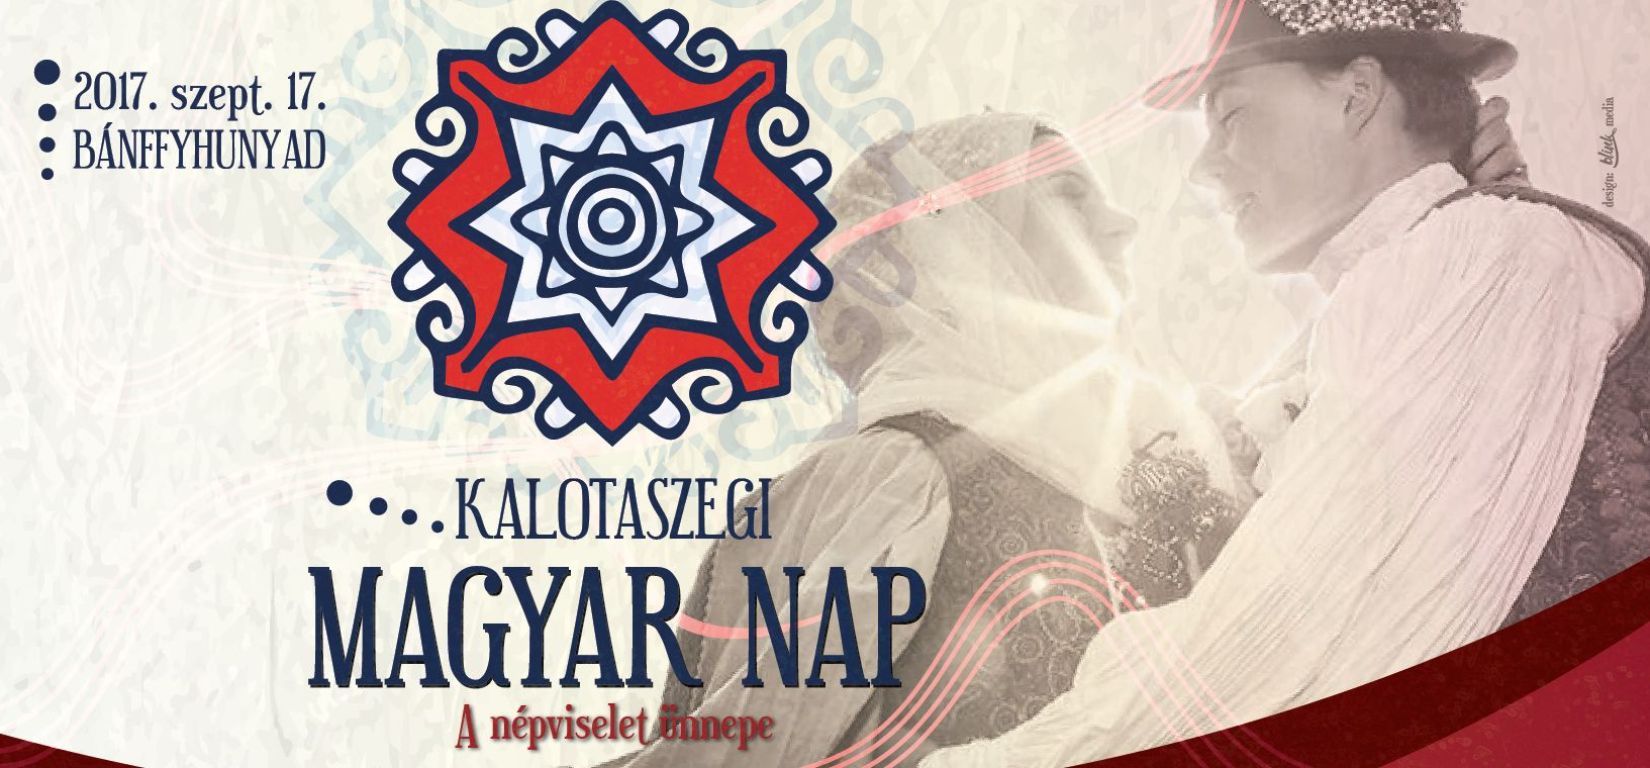 Kalotaszegi Magyar Napot szerveznek Bánffyhunyadon